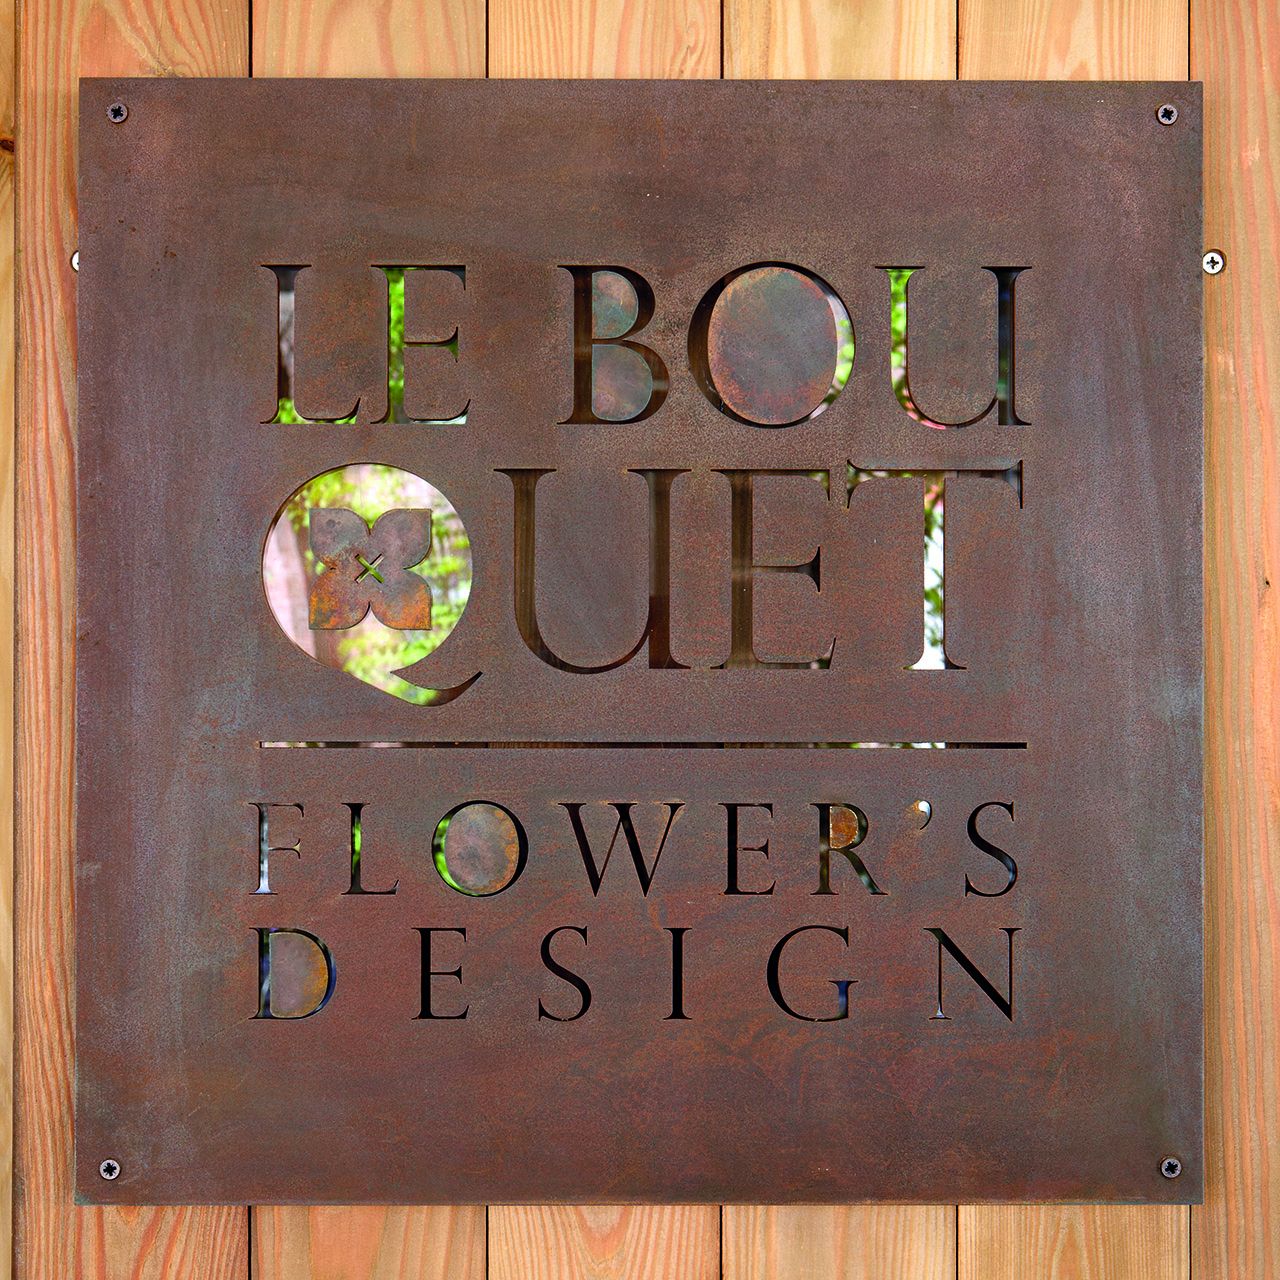 Dettagli del punto vendita di Le Bouquet